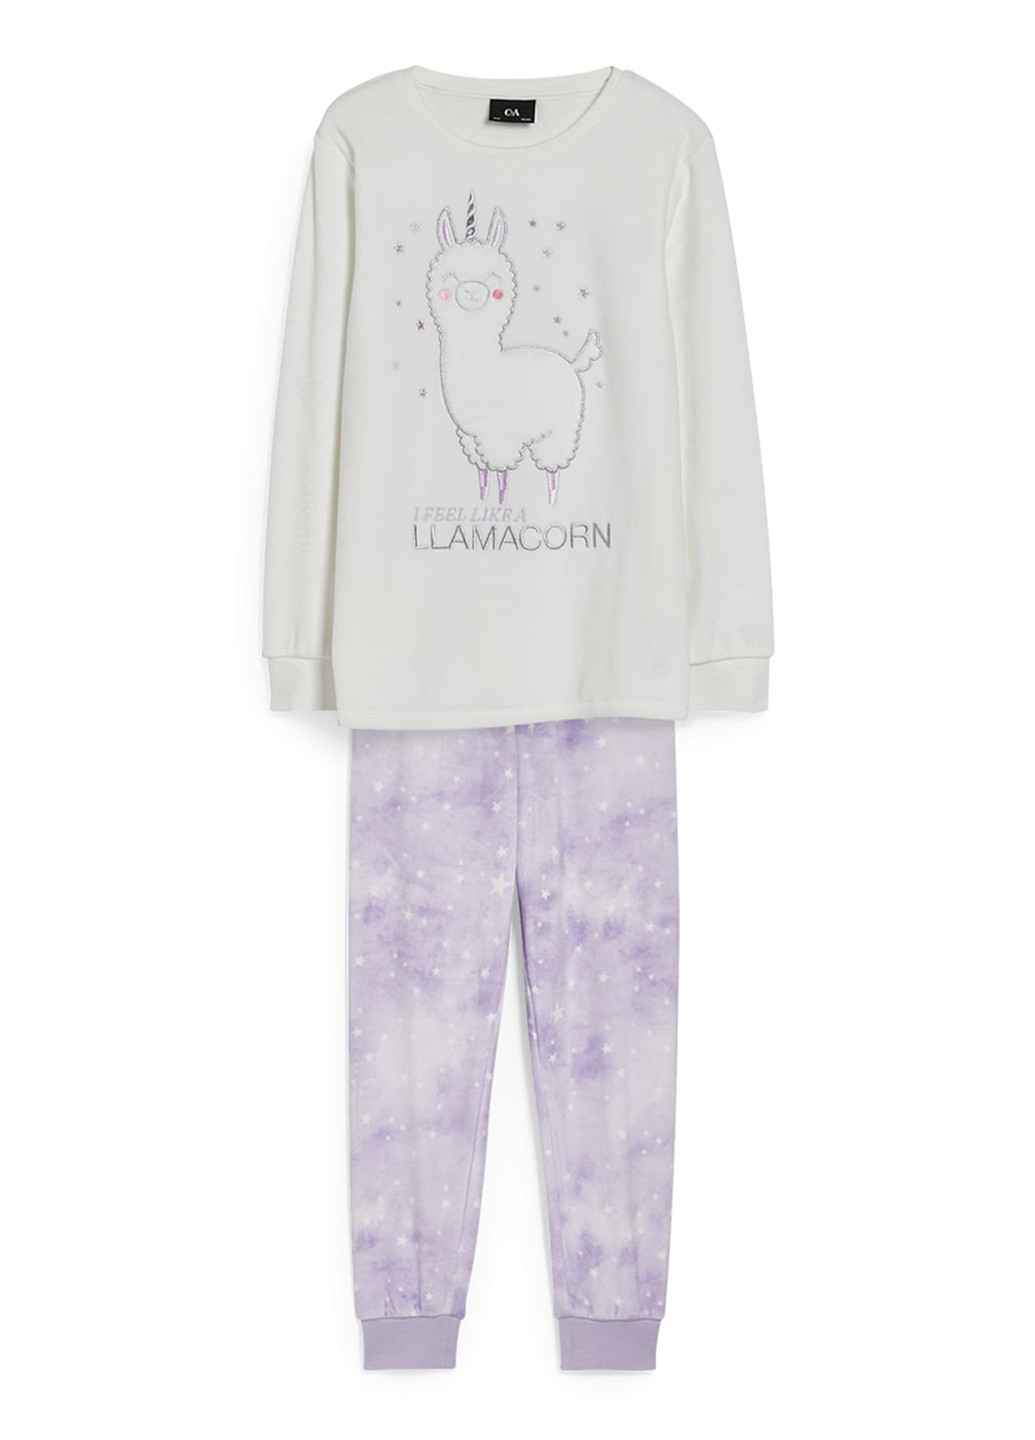 Комбинированная демисезонная пижама (свитшот, брюки) свитшот + брюки C&A